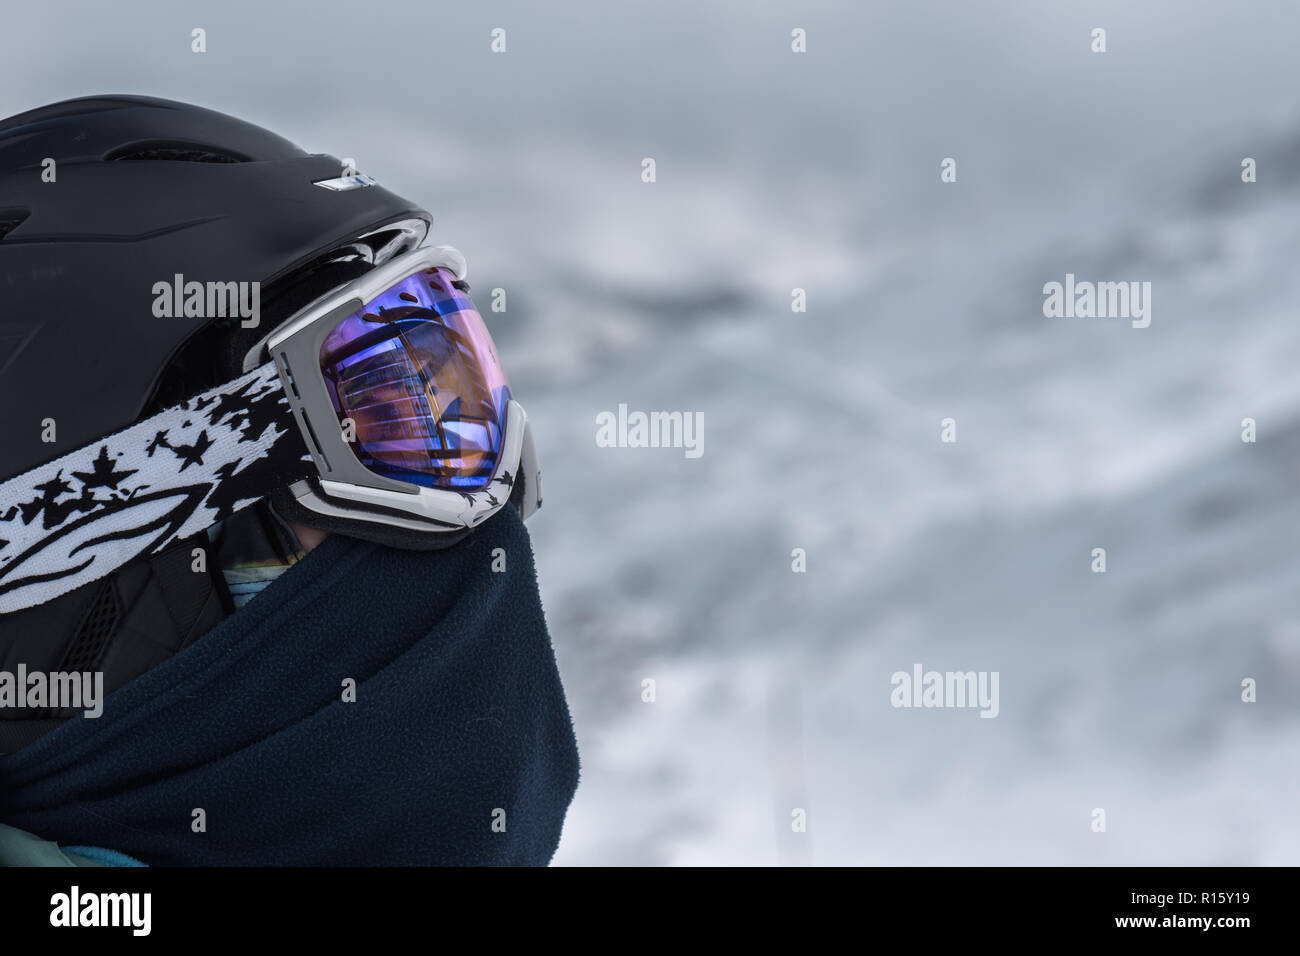 Athletischen weiblichen Snowboarder am Gipfel Stockfoto